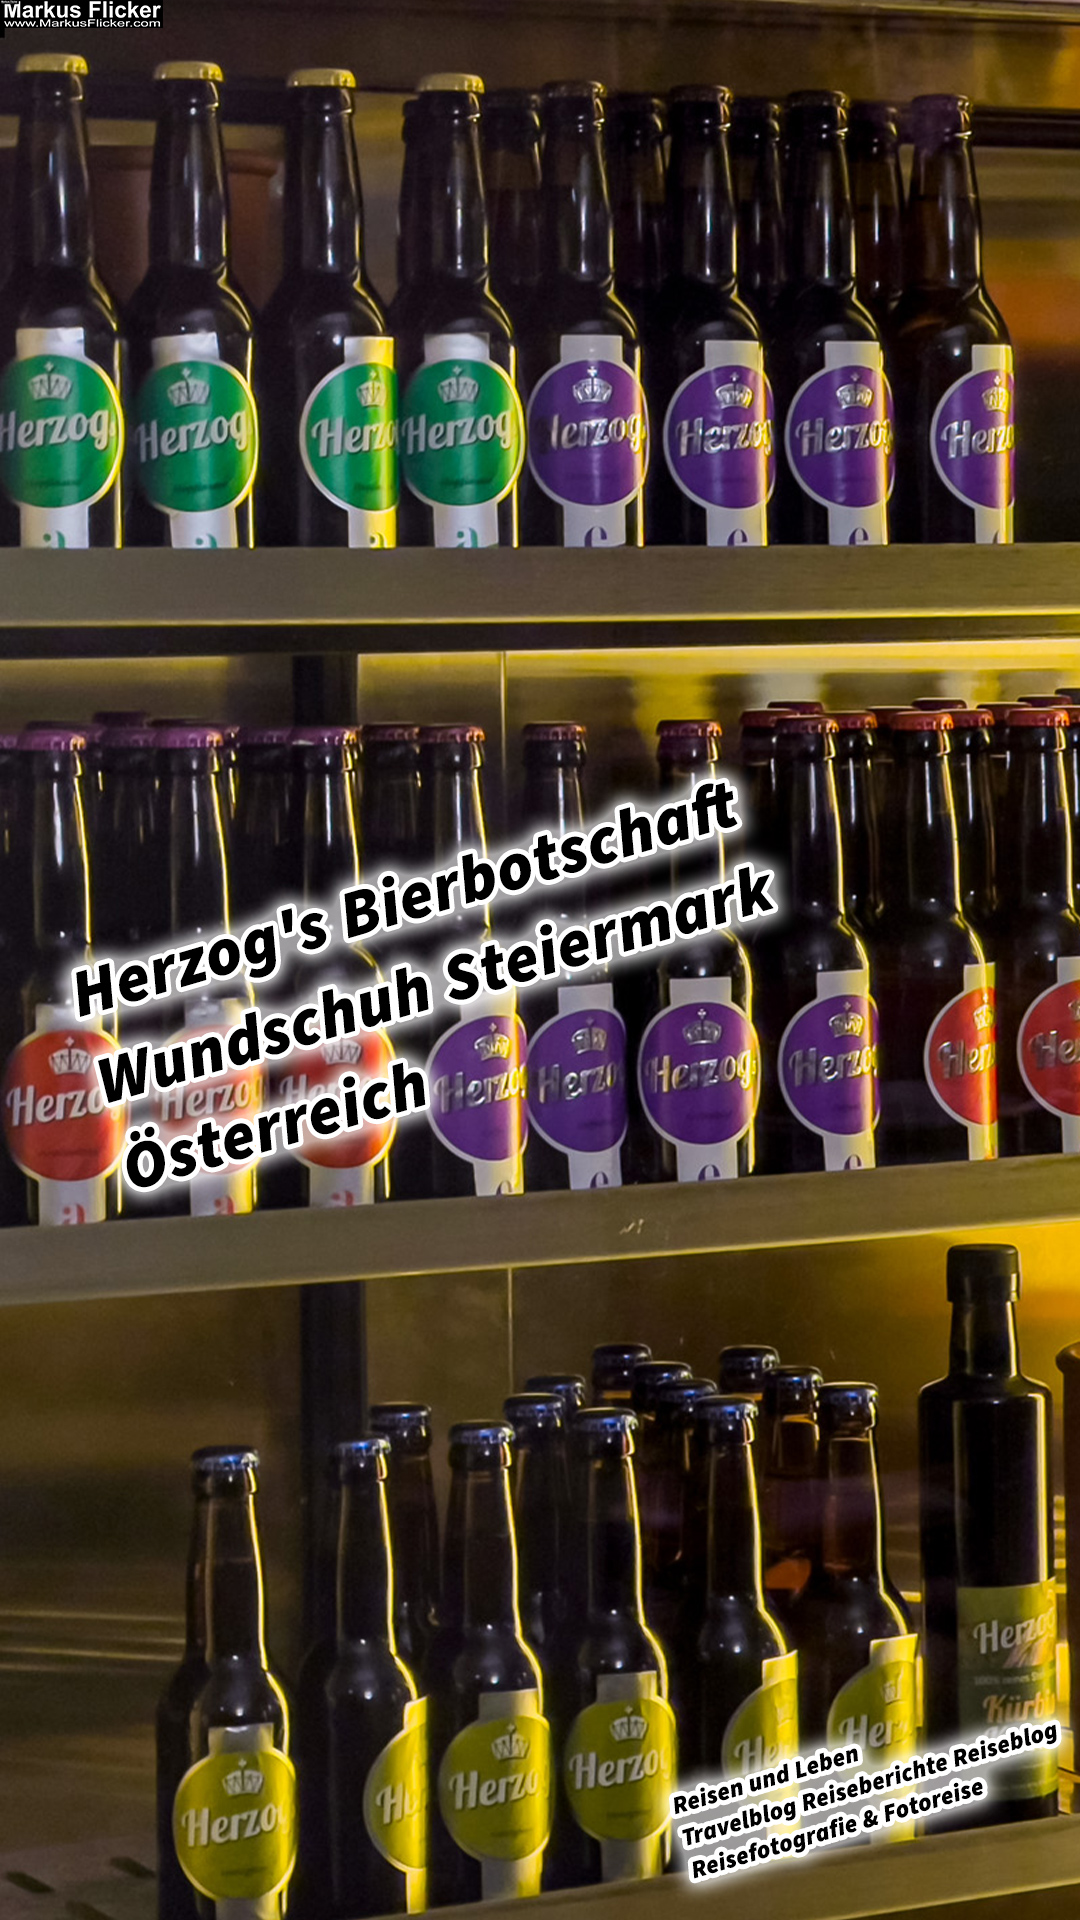 Herzog’s Bierbotschaft Wundschuh Steiermark Österreich